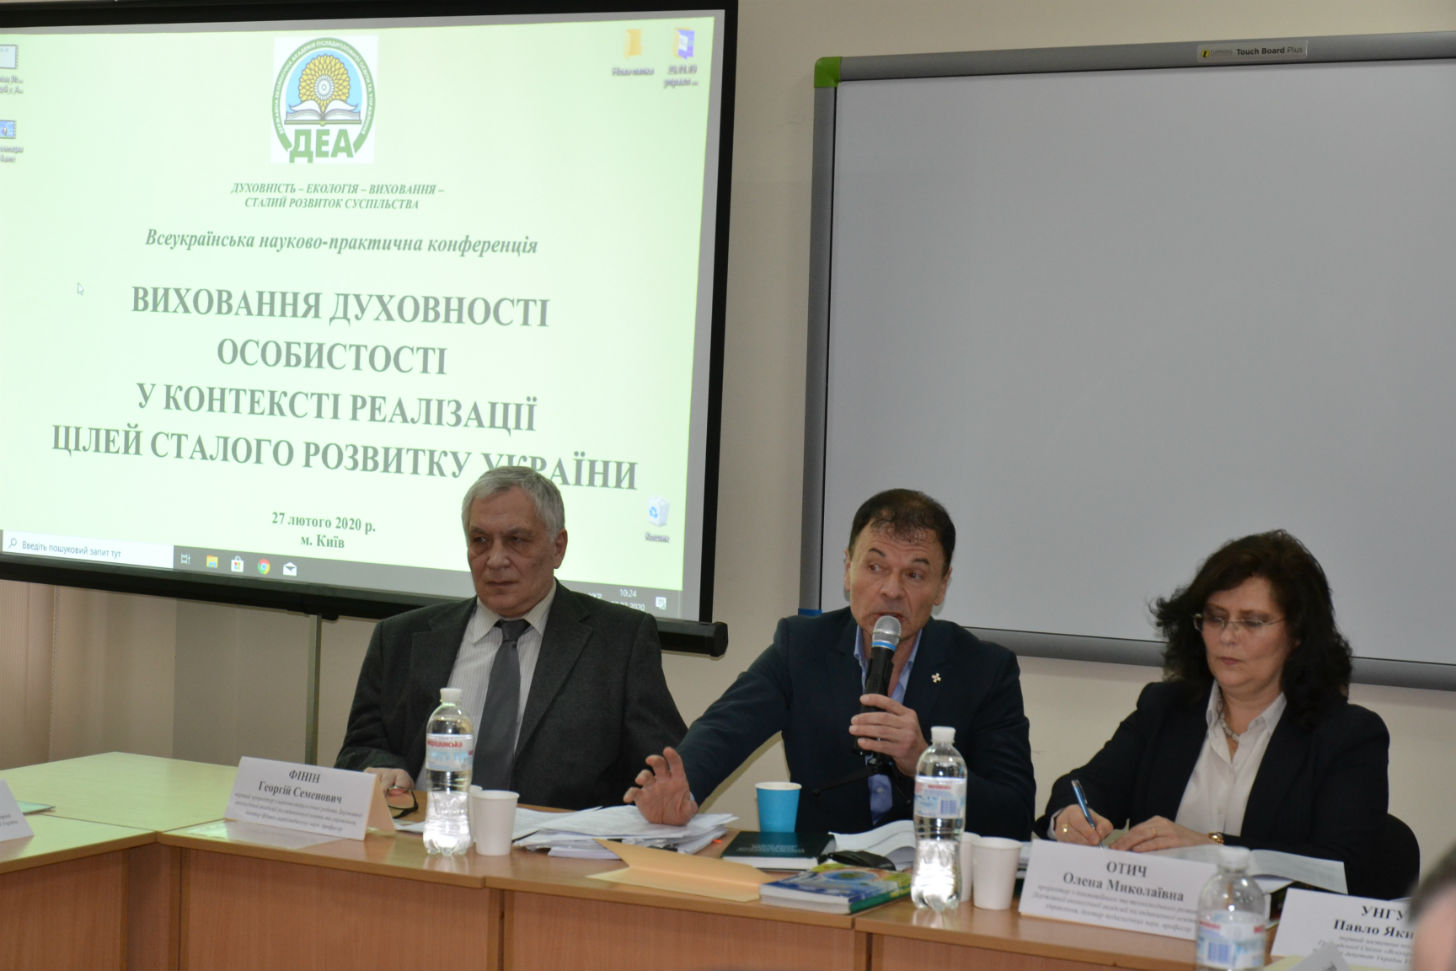 Конференція ''Виховання духовності особистості у контексті реалізації цілей сталого розвитку України